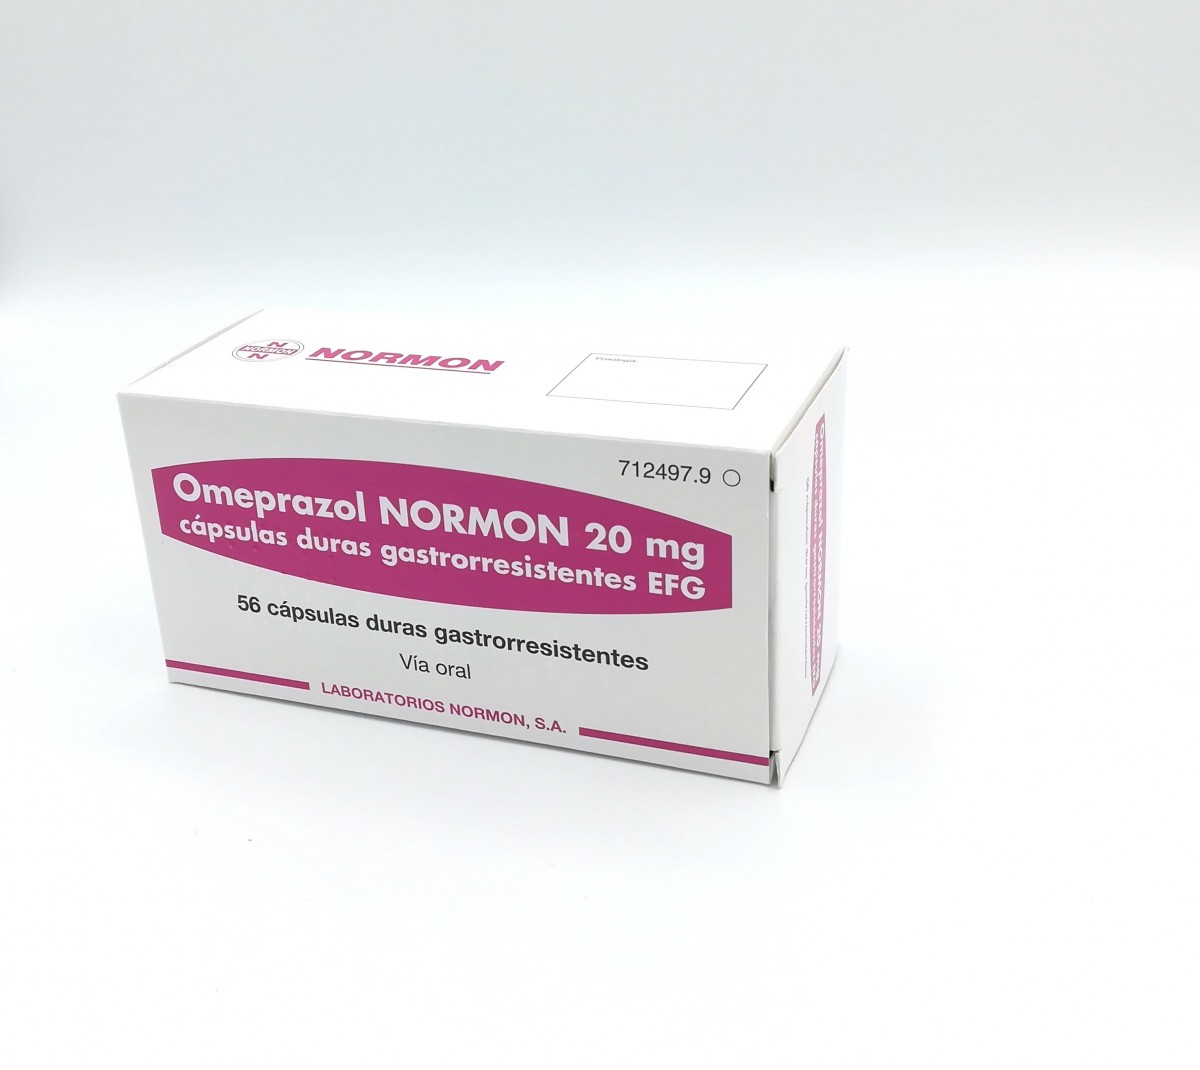 OMEPRAZOL NORMON 20 mg CAPSULAS DURAS GASTRORRESISTENTES EFG , 14 cápsulas fotografía del envase.